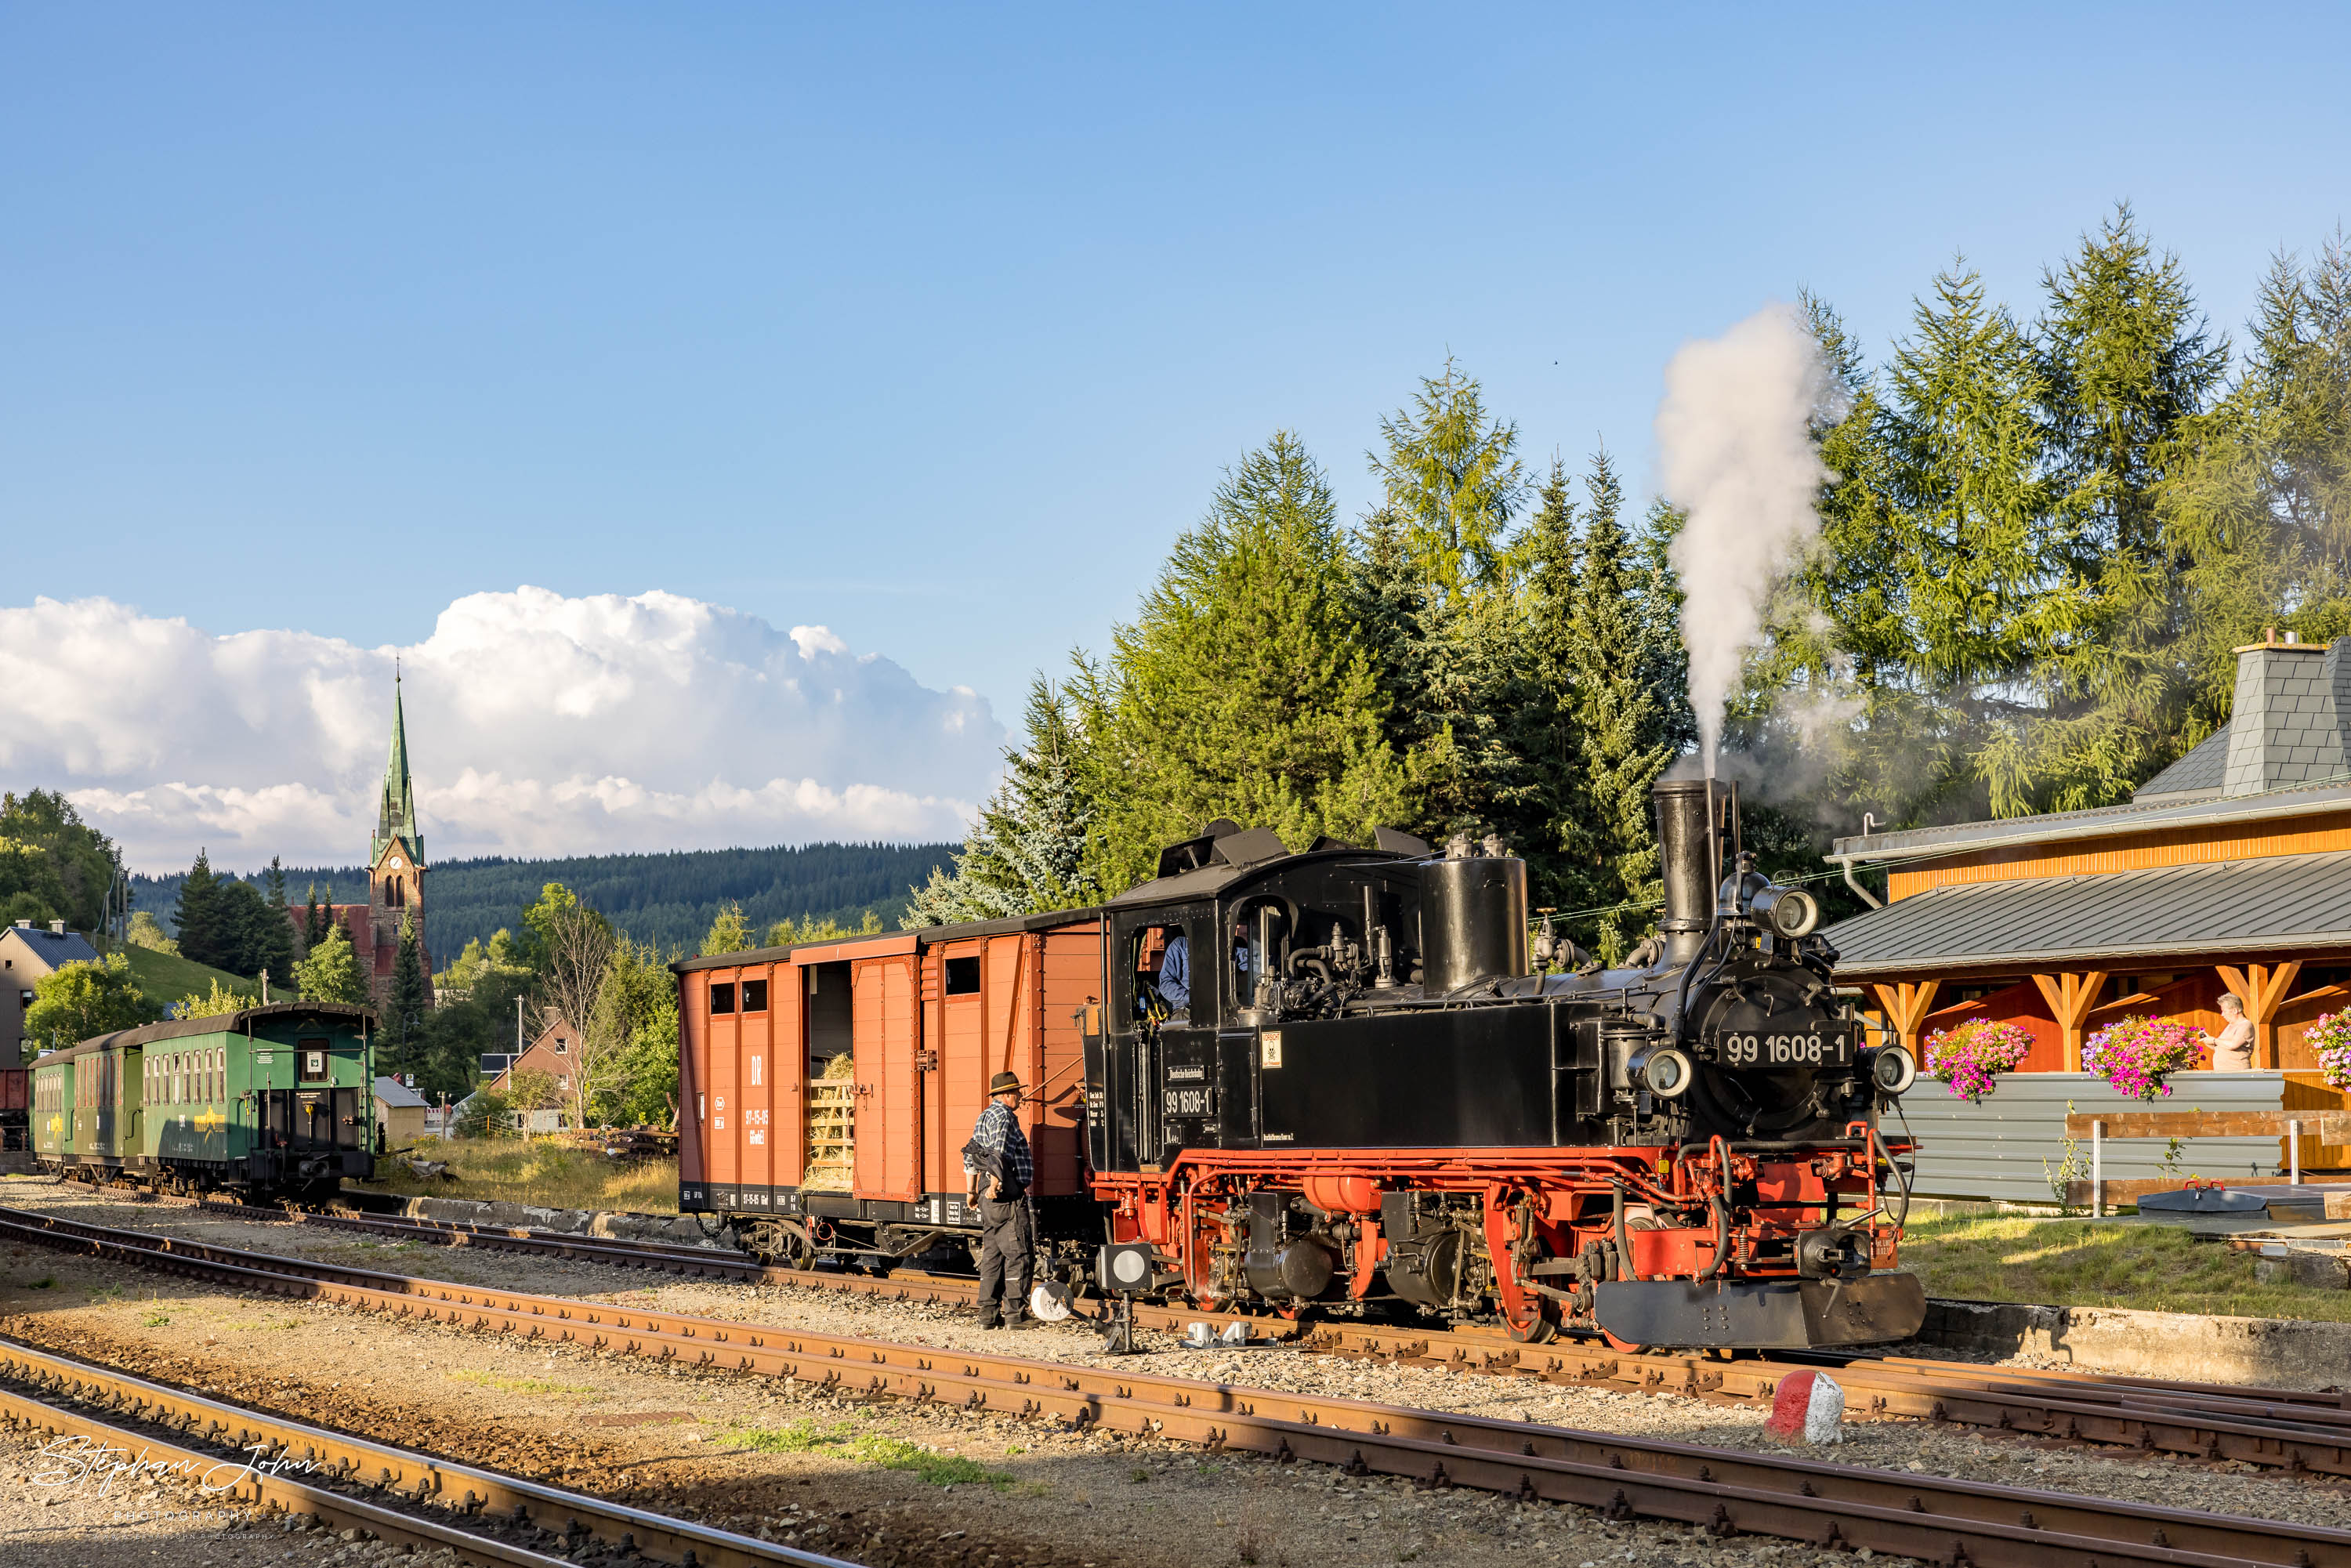 Zug P 1023 mit Lok 99 1608-1 nach Oberwiesenthal rangiert in Hammerunterwiesenthal.